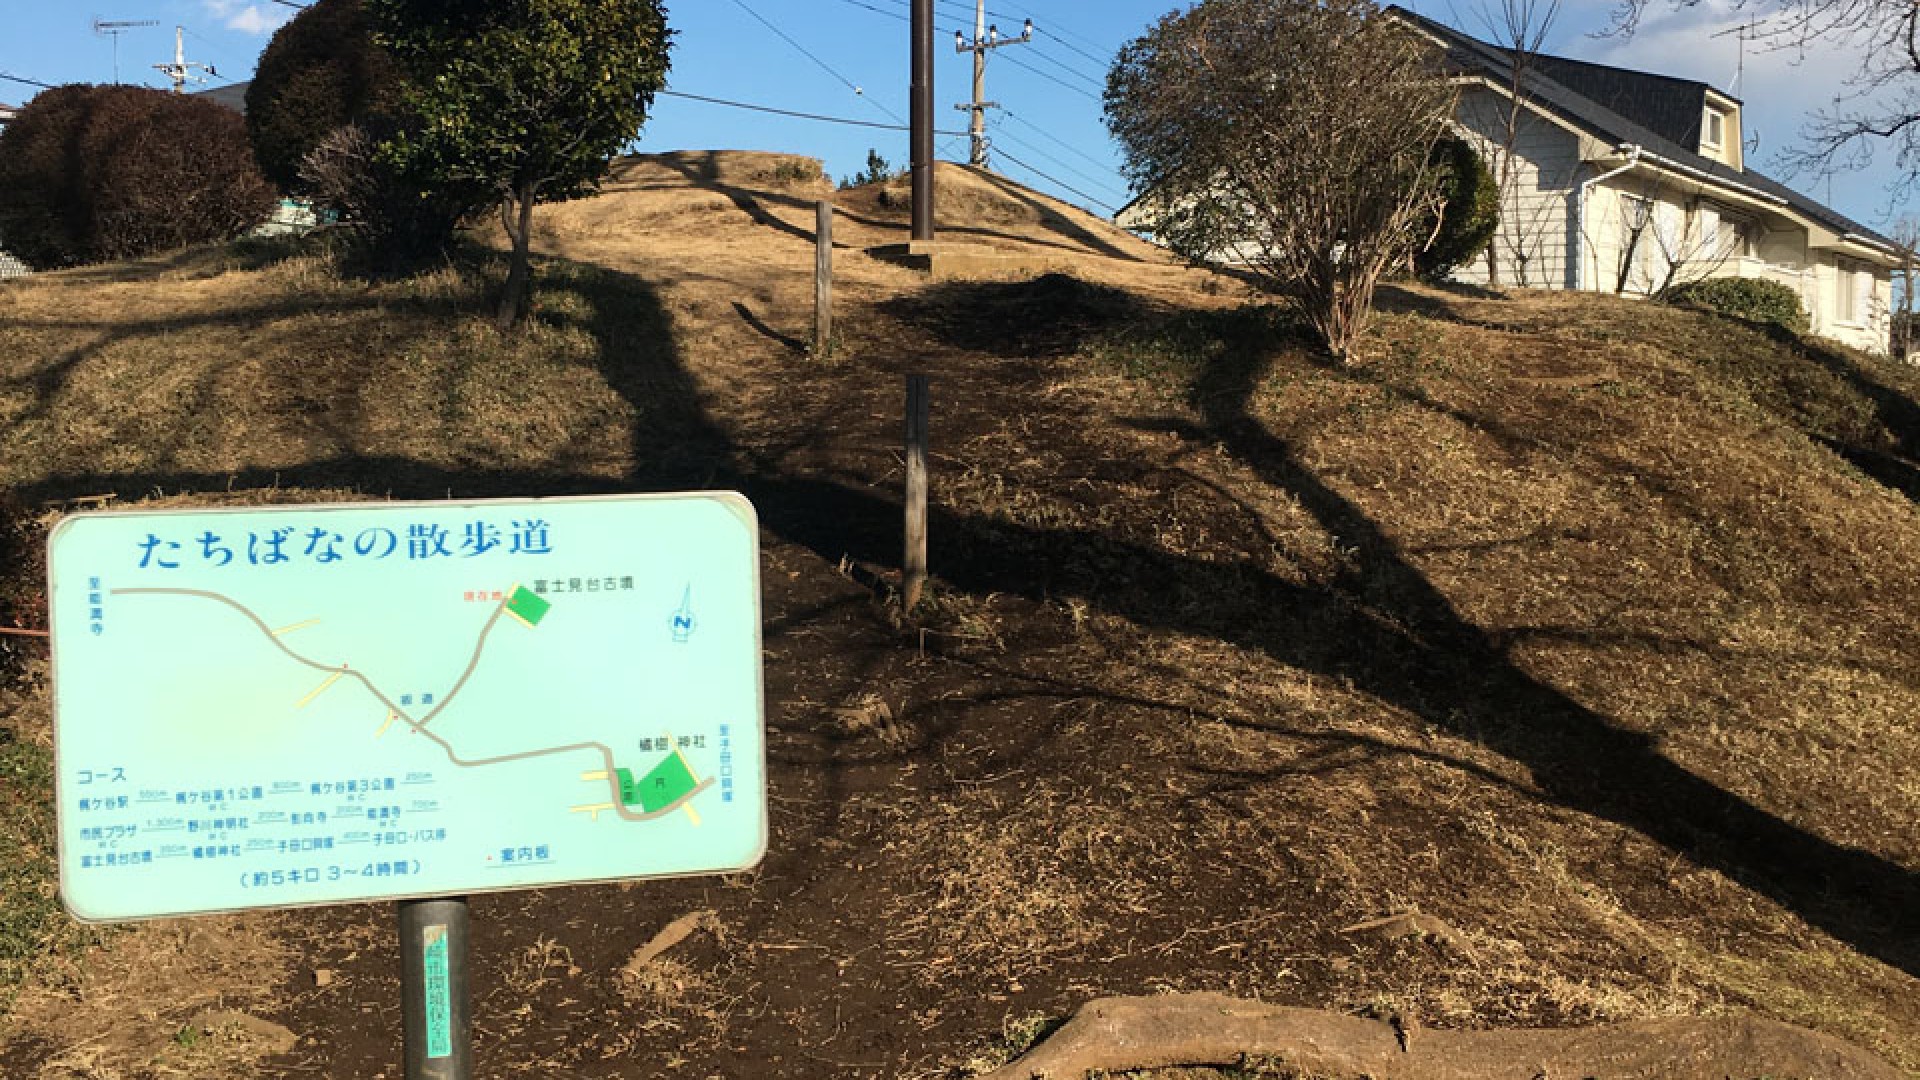 Tachibana-Schrein und Fujimidai-Grabstätte